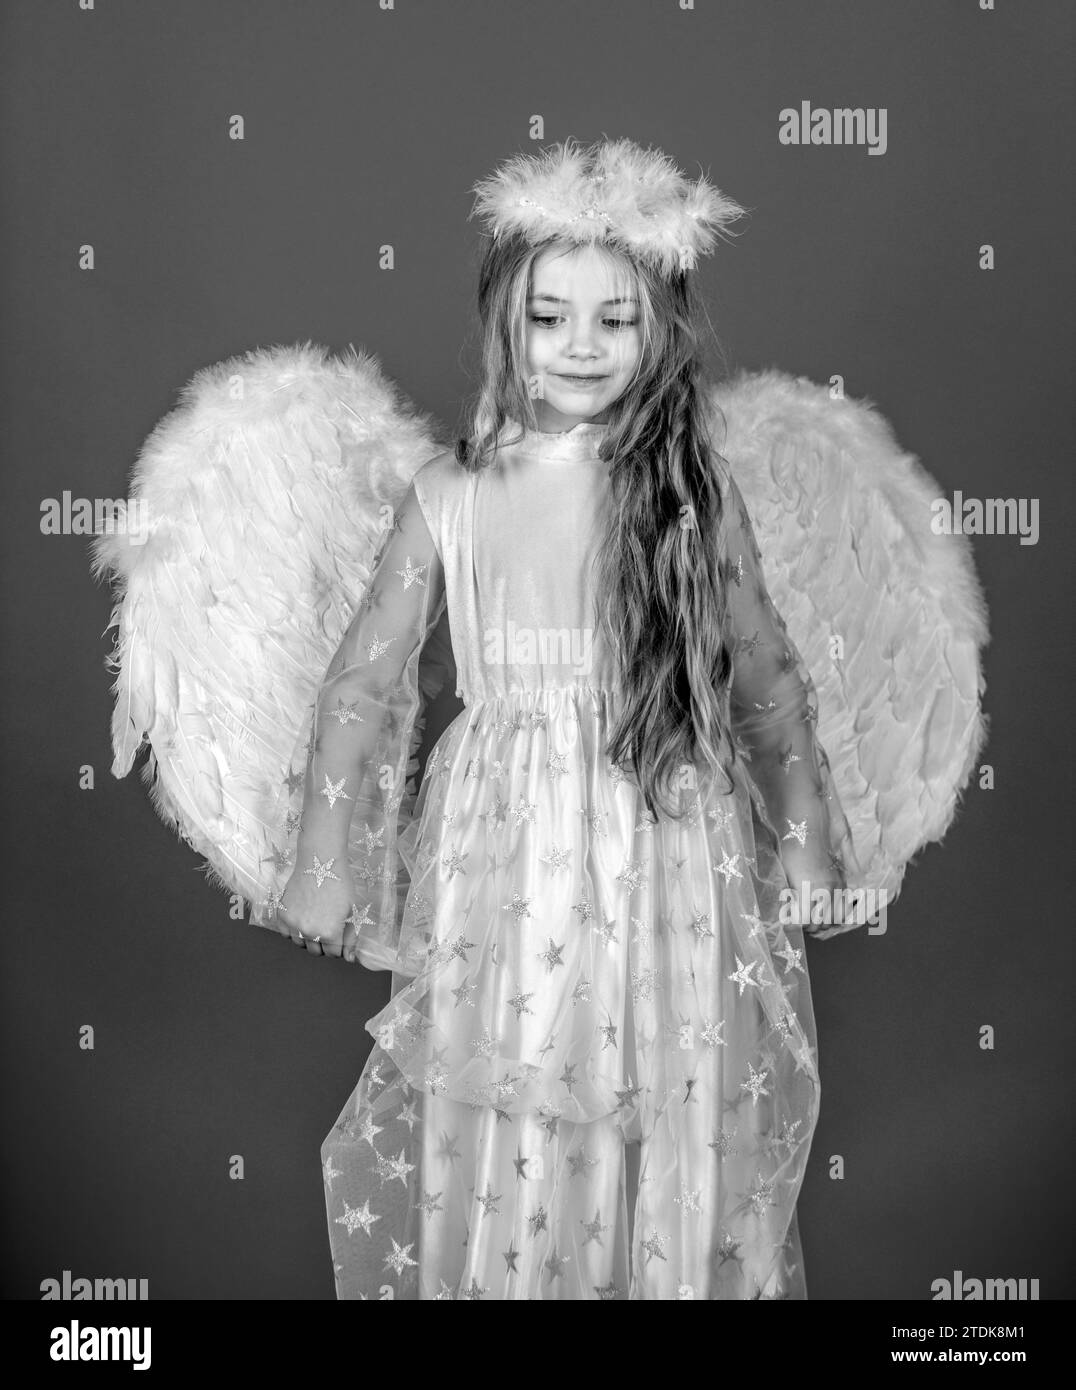 Alas de ángel y alas de plumas blancas para adultos, disfraz de fiesta para  niños y niñas, regalo único de Navidad (alas de ángel blancas y halo)